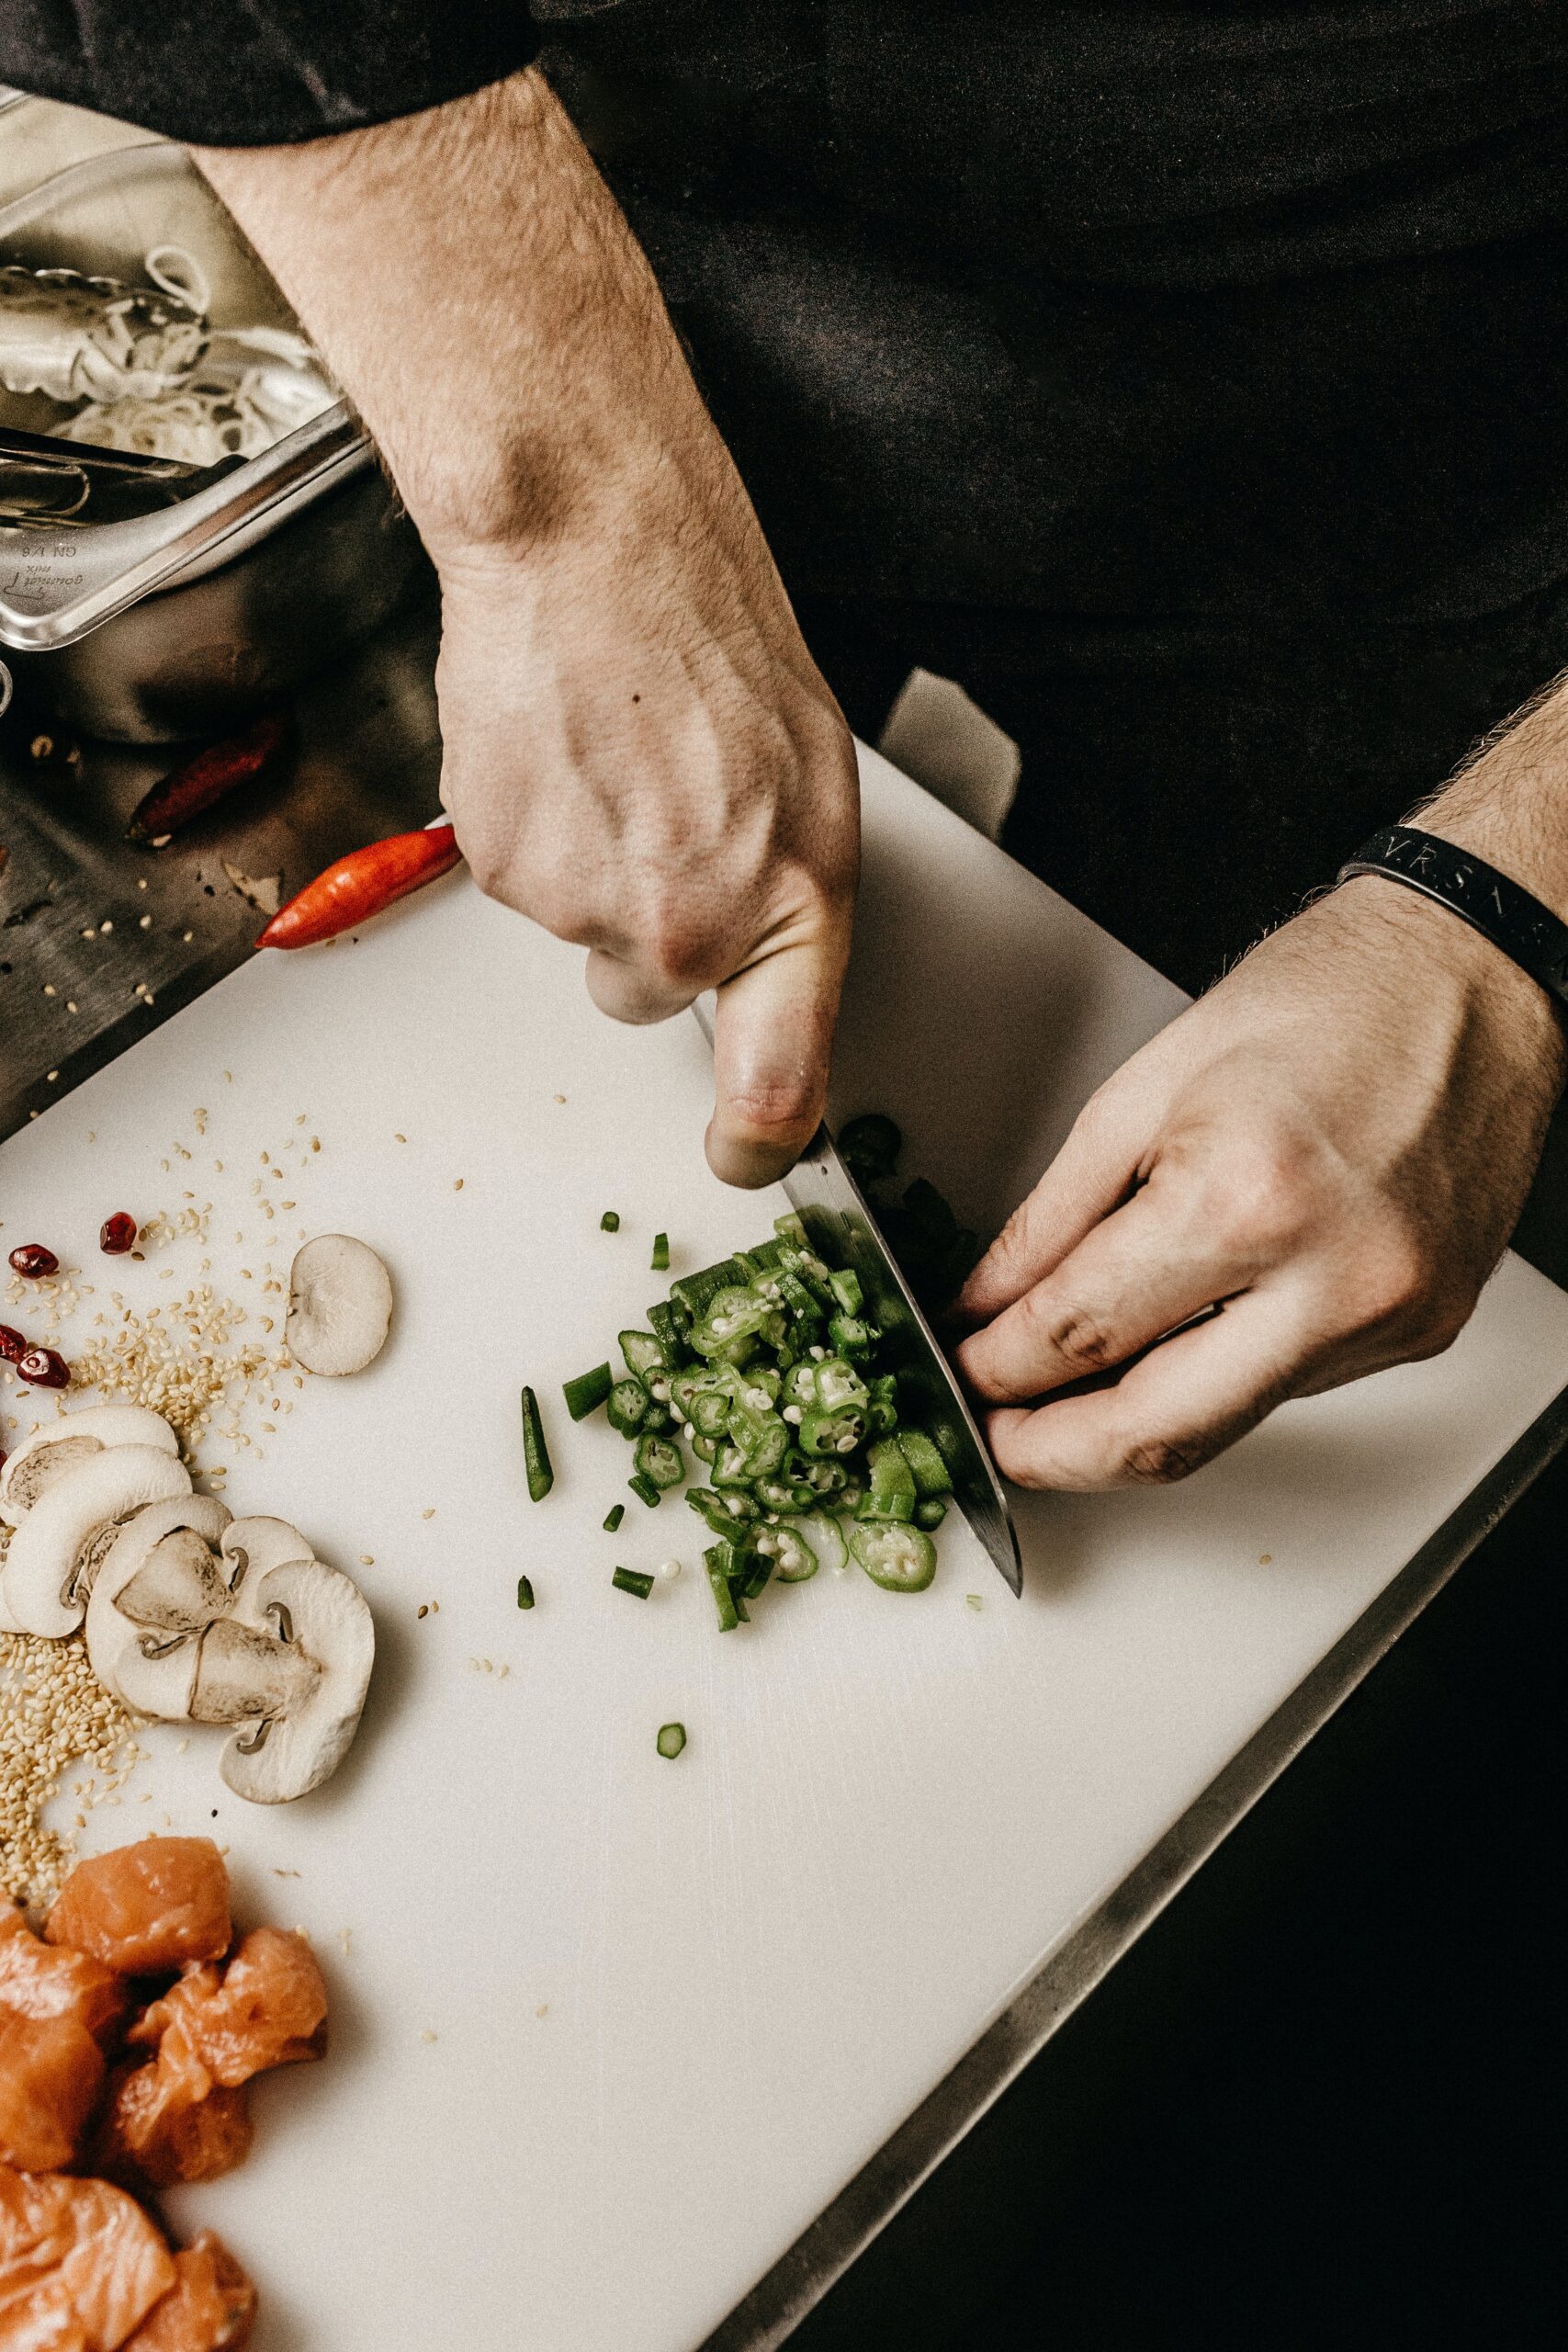 Bilden visar en person som hackar mat på en skärbräda. Restaurangmaskiner är även en viktig del för att förbereda mat i ett kök och underlätta matlagningen.